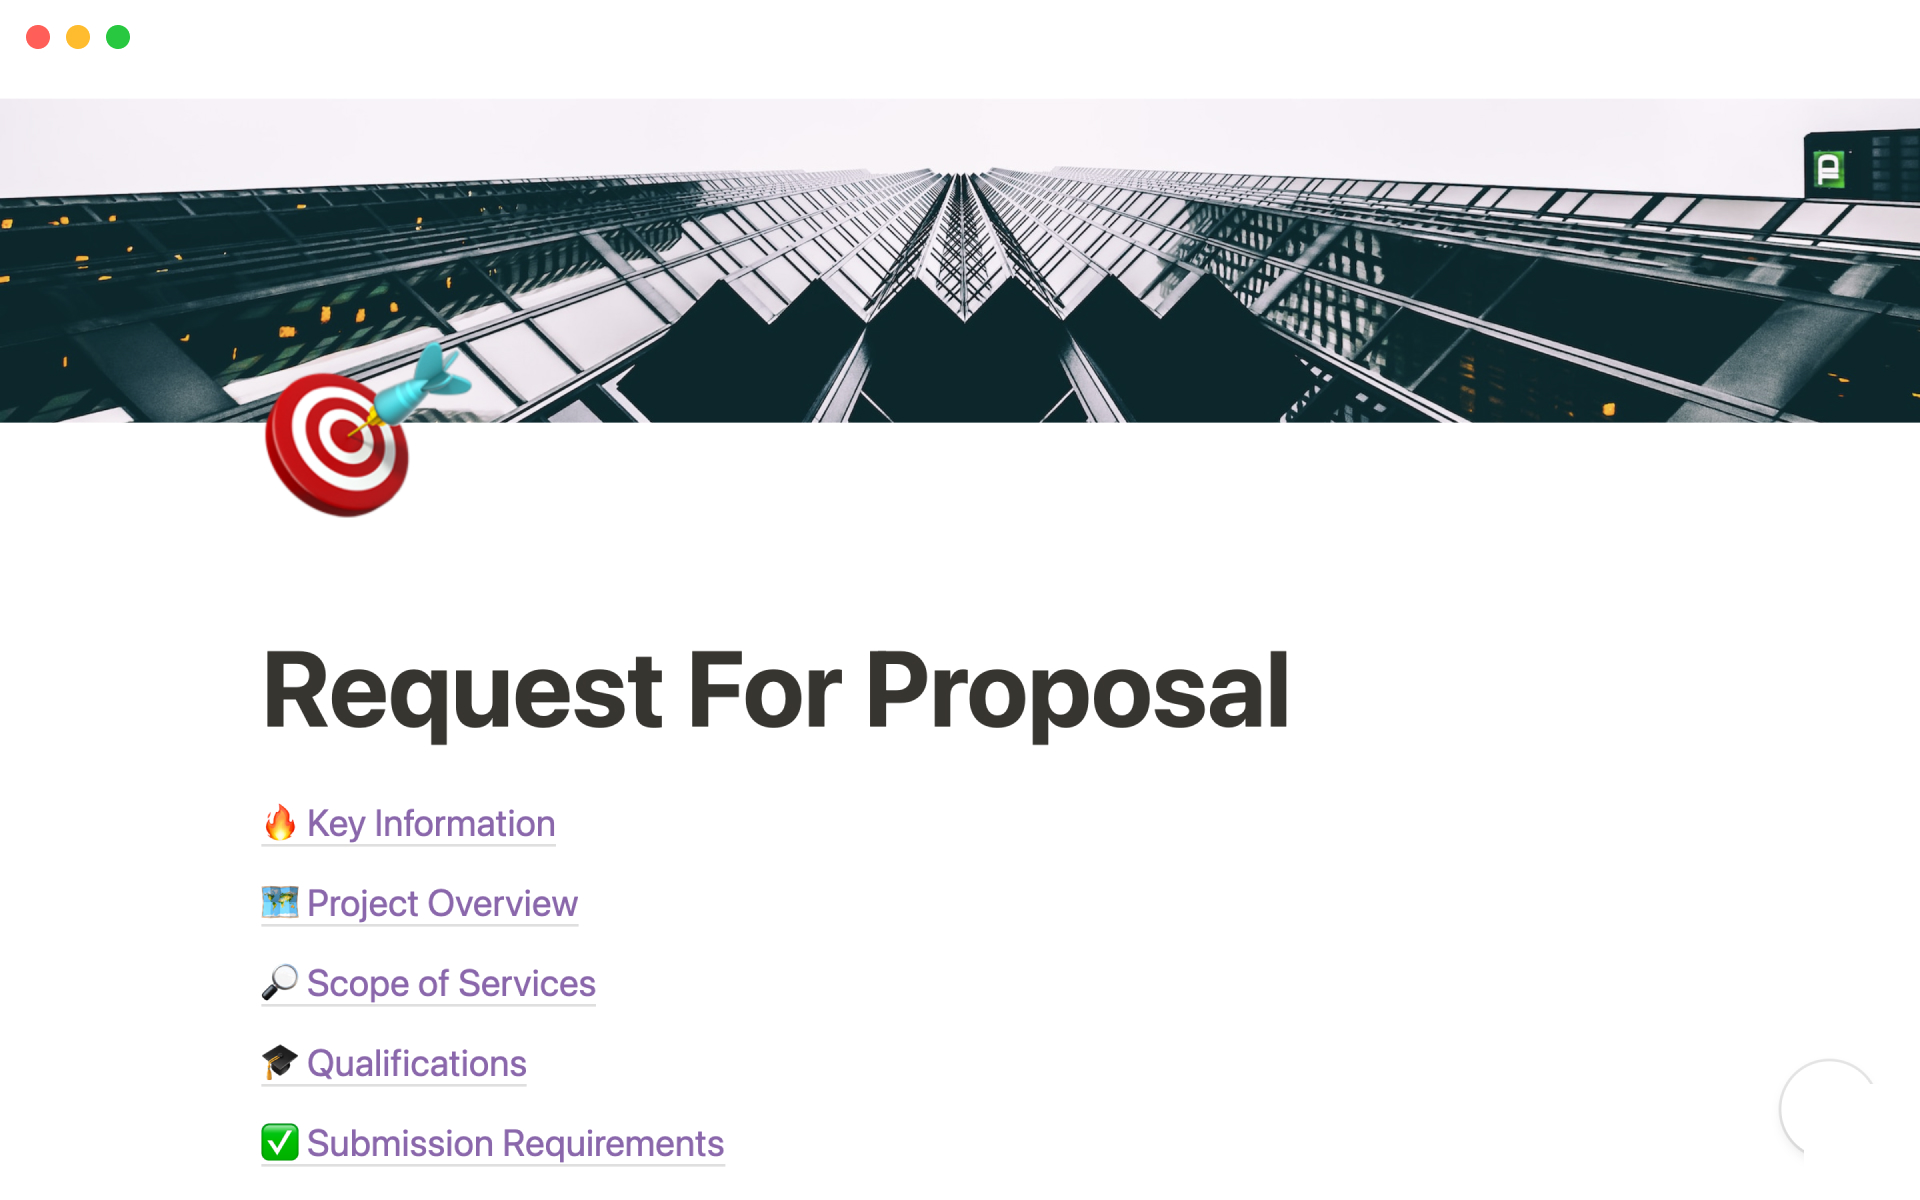 Uma prévia do modelo para Request For Proposal (RFP)